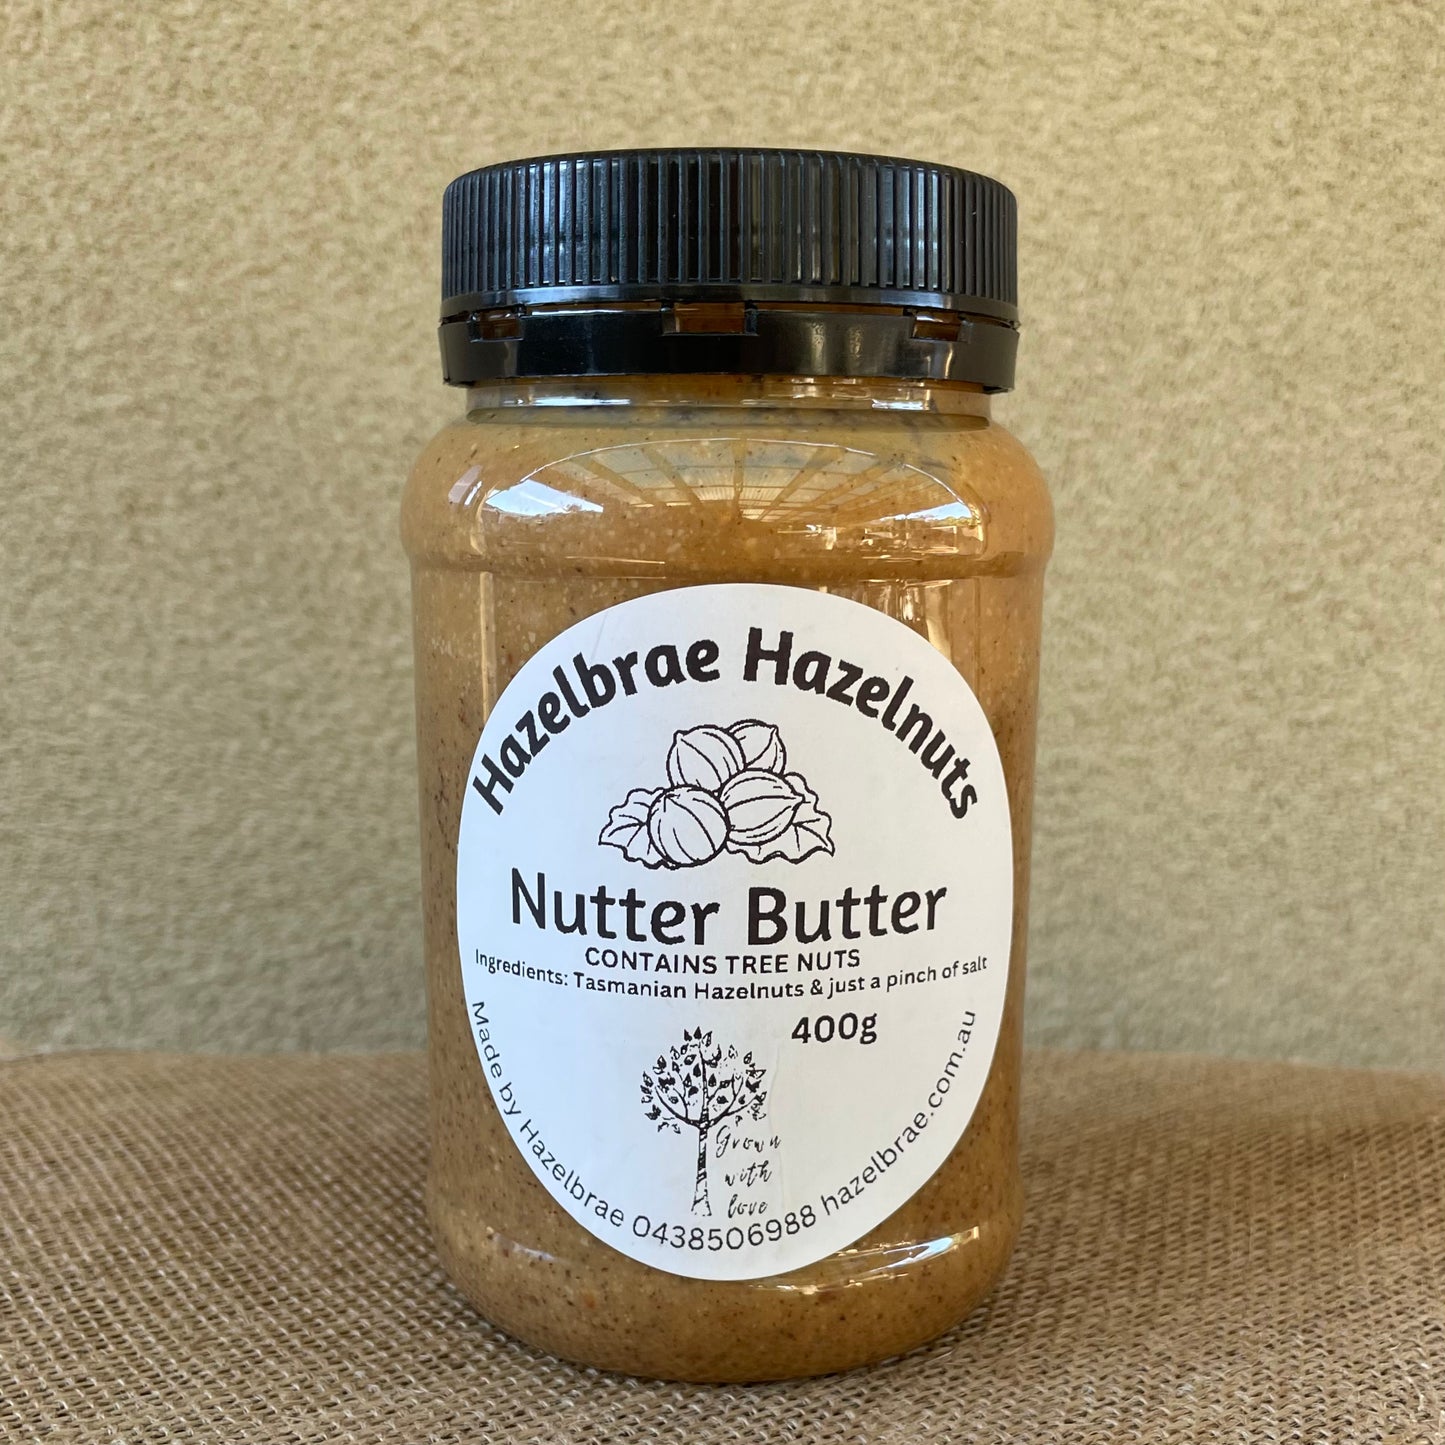 Hazelnut butter